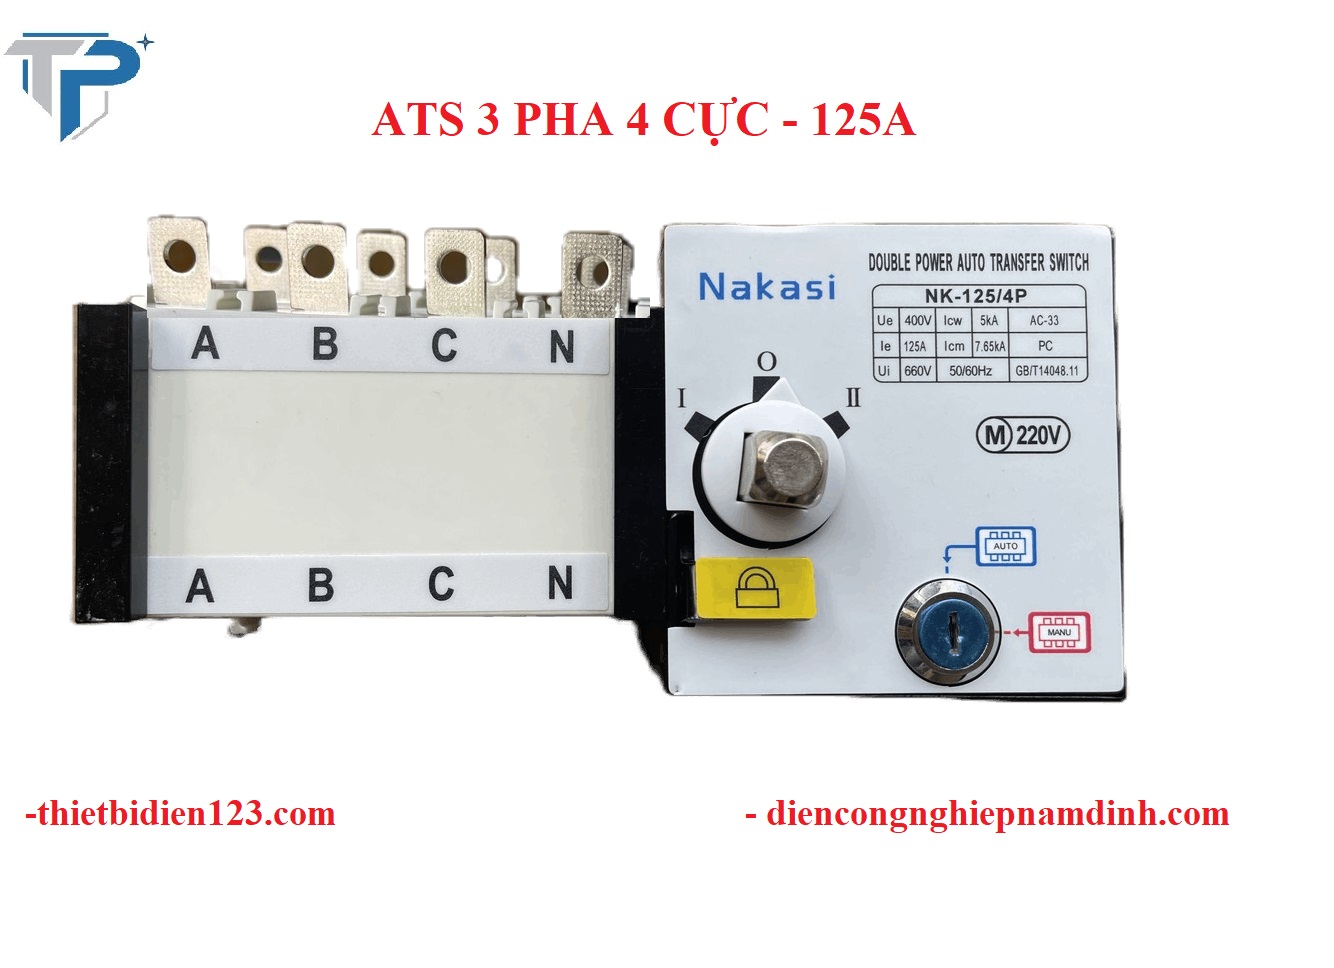 Chuyển nguồn tự động ATS 4P 125A - chuyển nguồn cho điện 3 pha